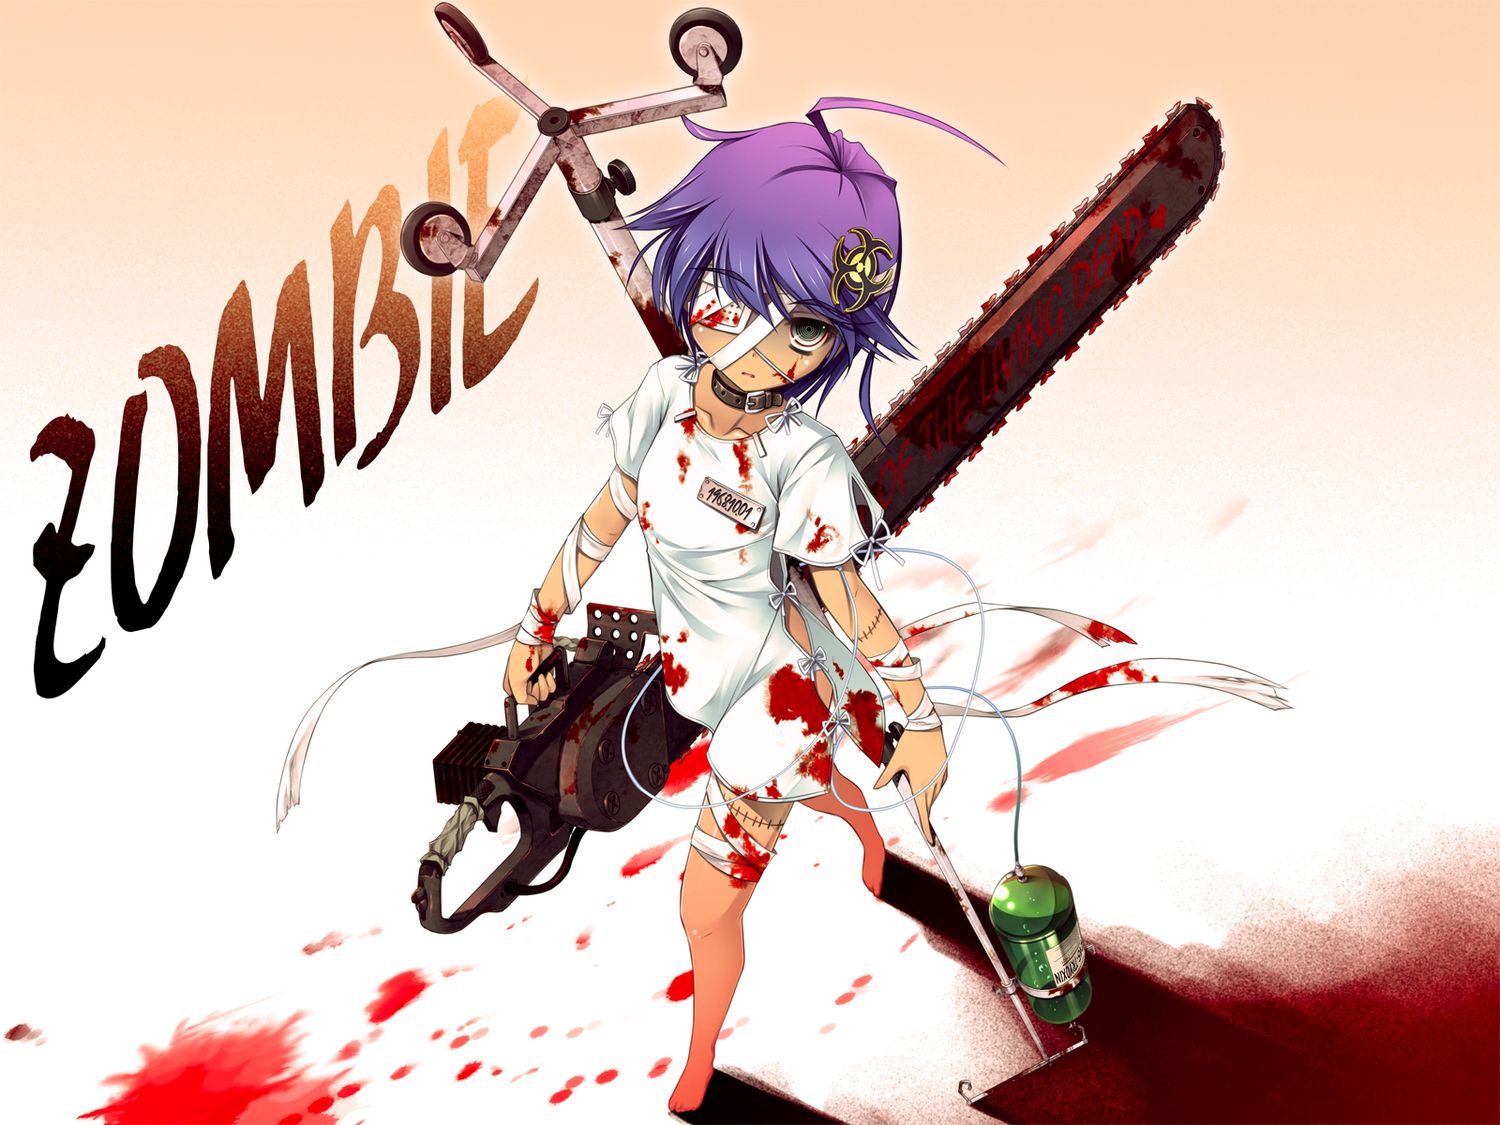 Bloody Anime Girl Wallpaperdigitalresult.com